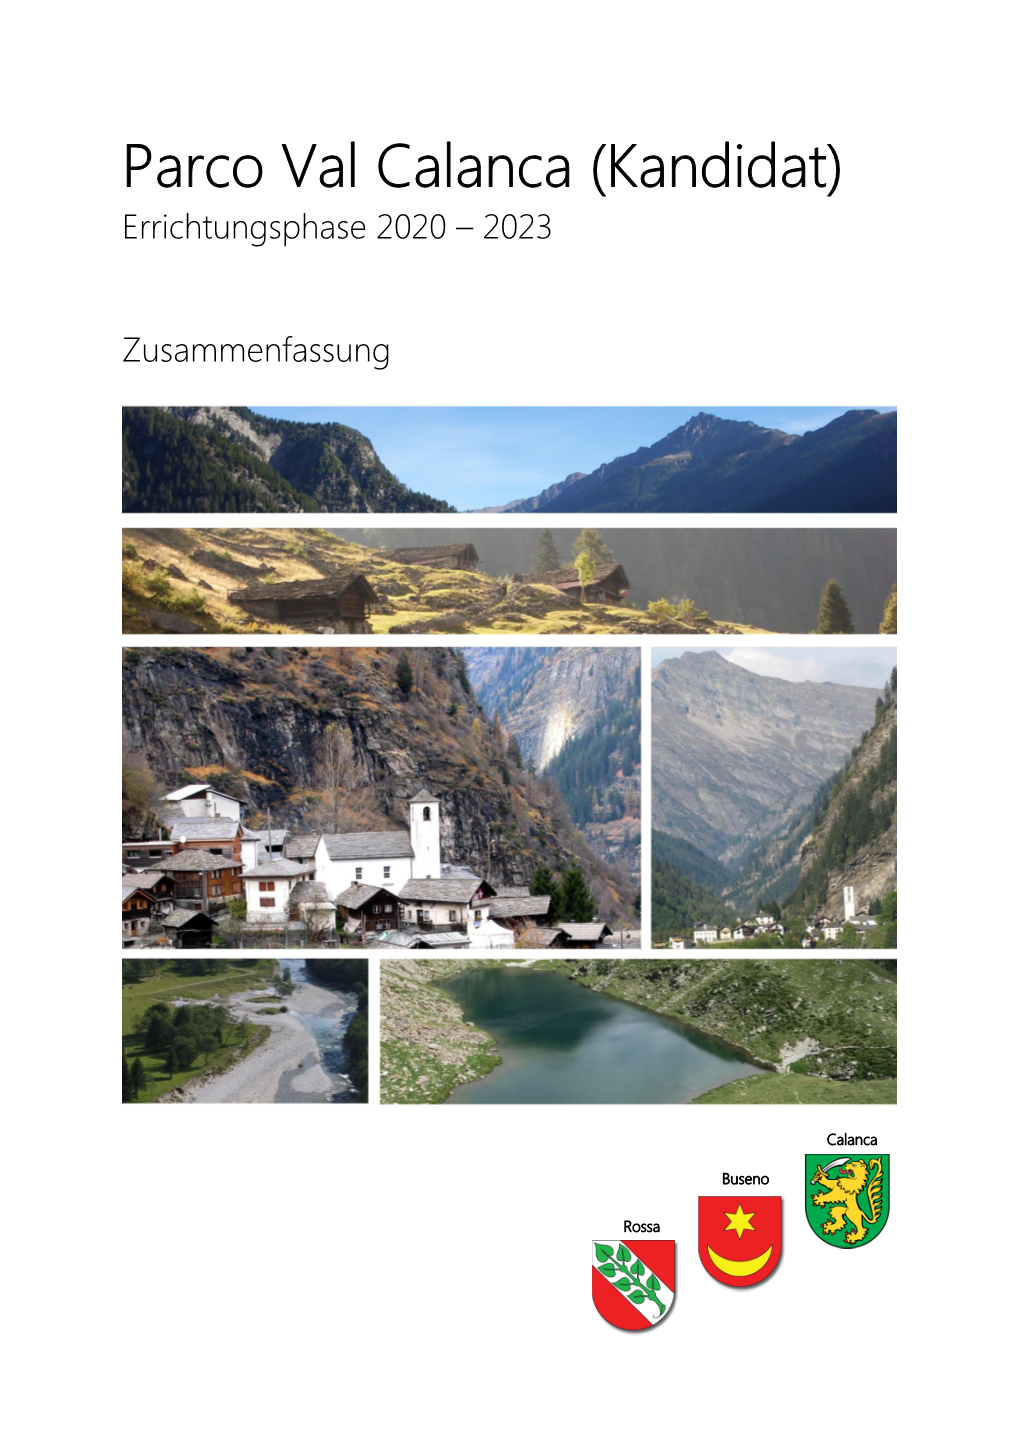 Zusammenfassung Kandidatur Parco Val Calanca - Februar 2020